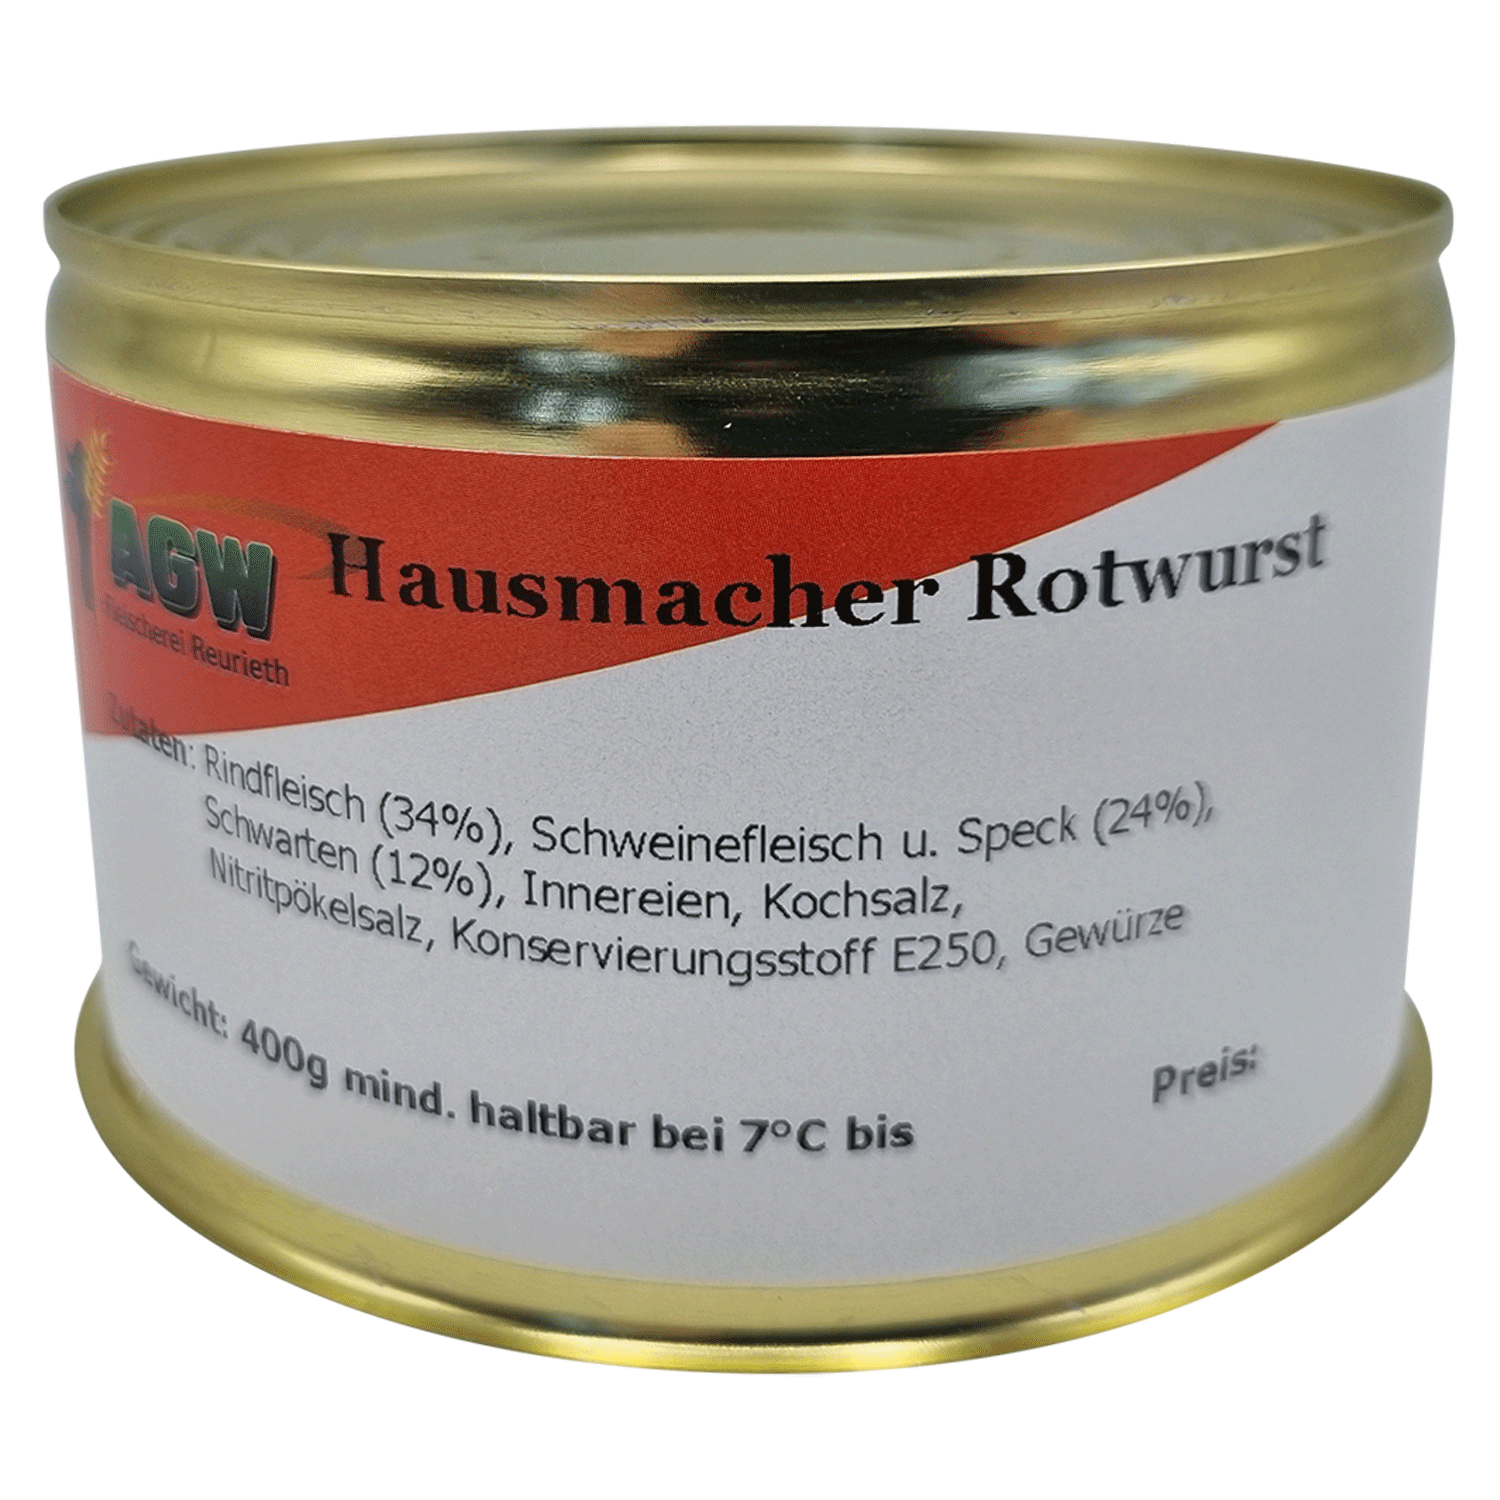 Hausmacher Rotwurst